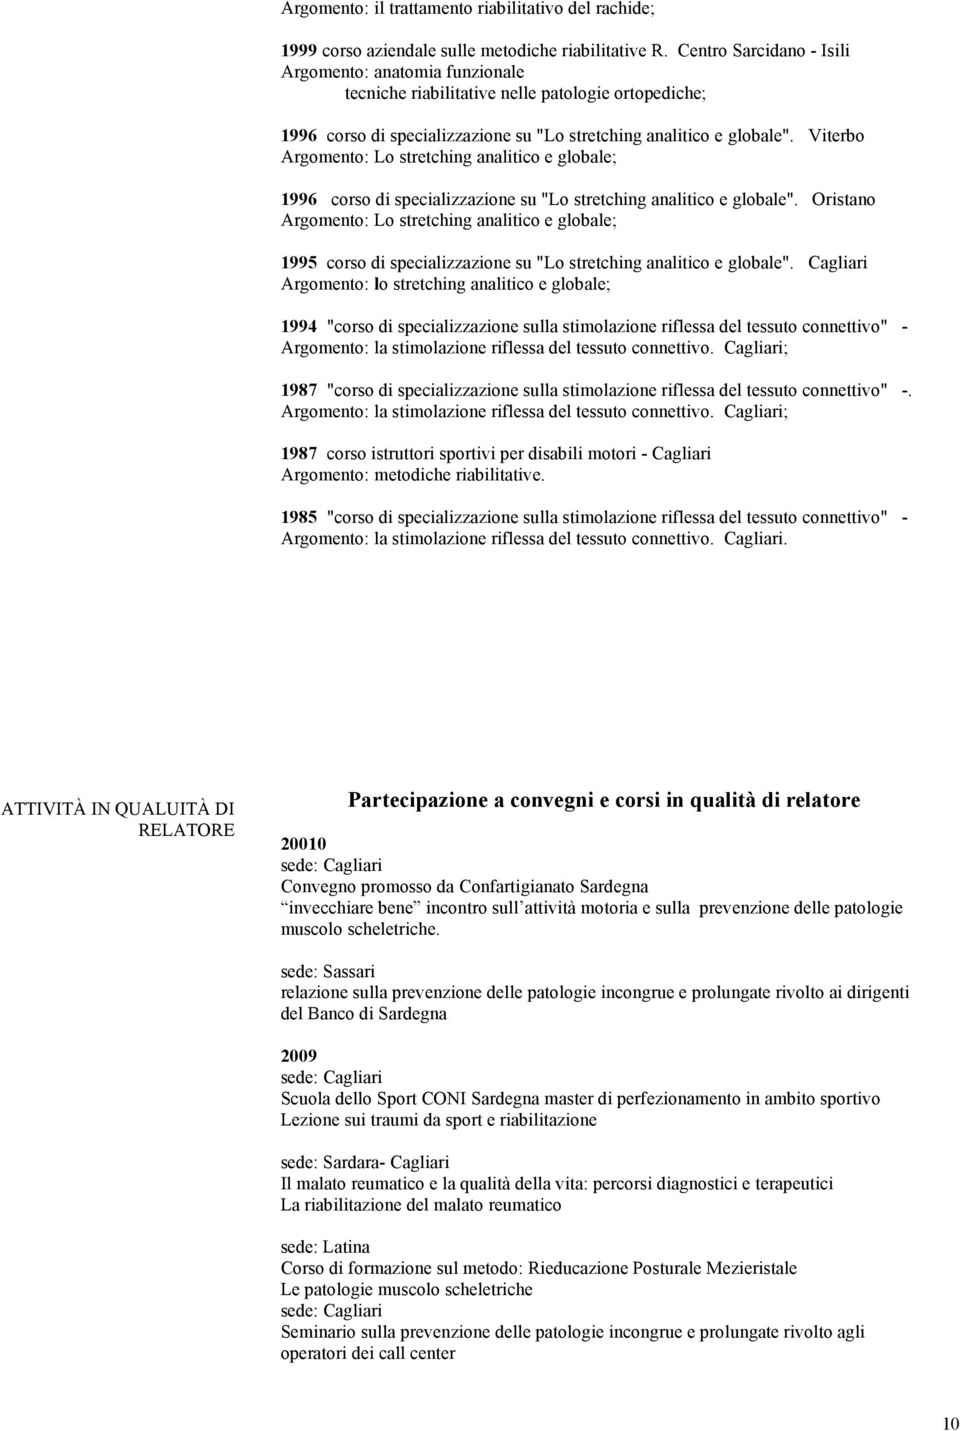 Viterbo Argomento: Lo stretching analitico e globale; 1996 corso di specializzazione su "Lo stretching analitico e globale".